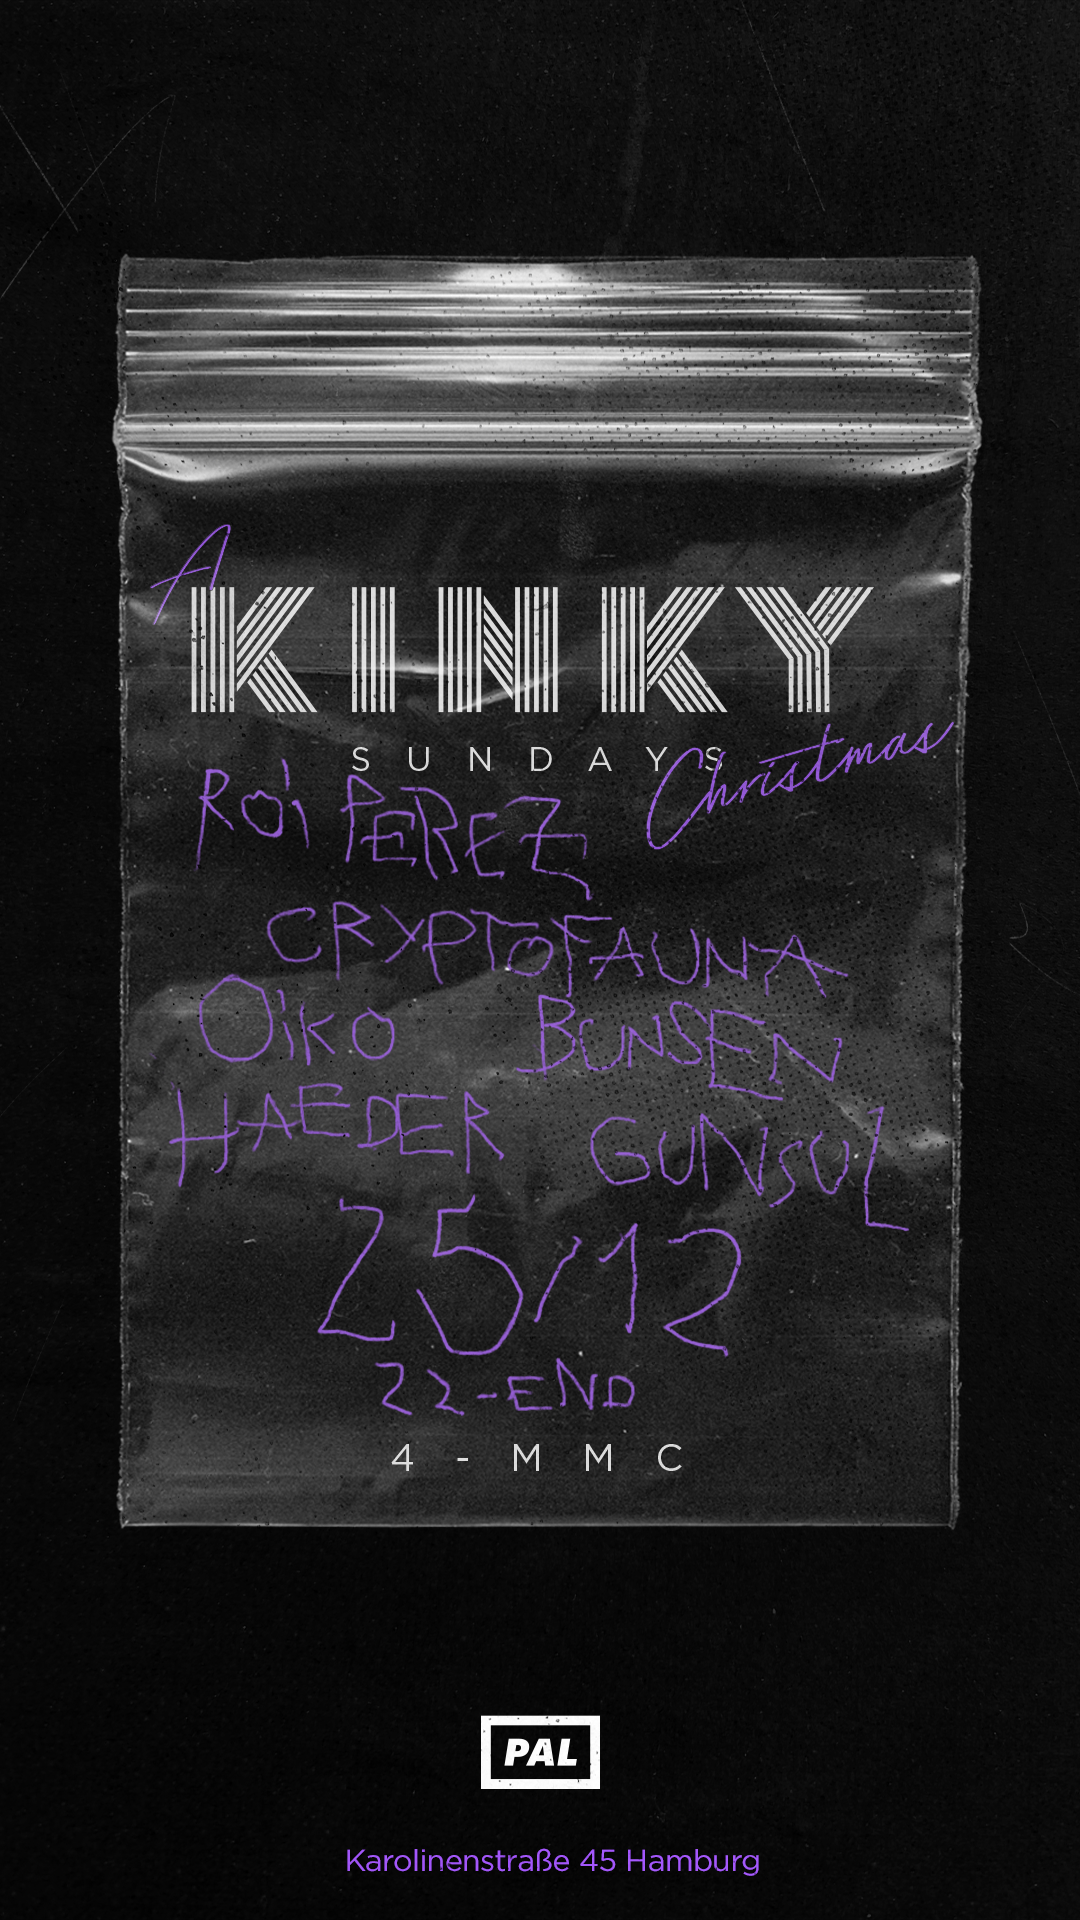 KINKY SUNDAYS - Página frontal